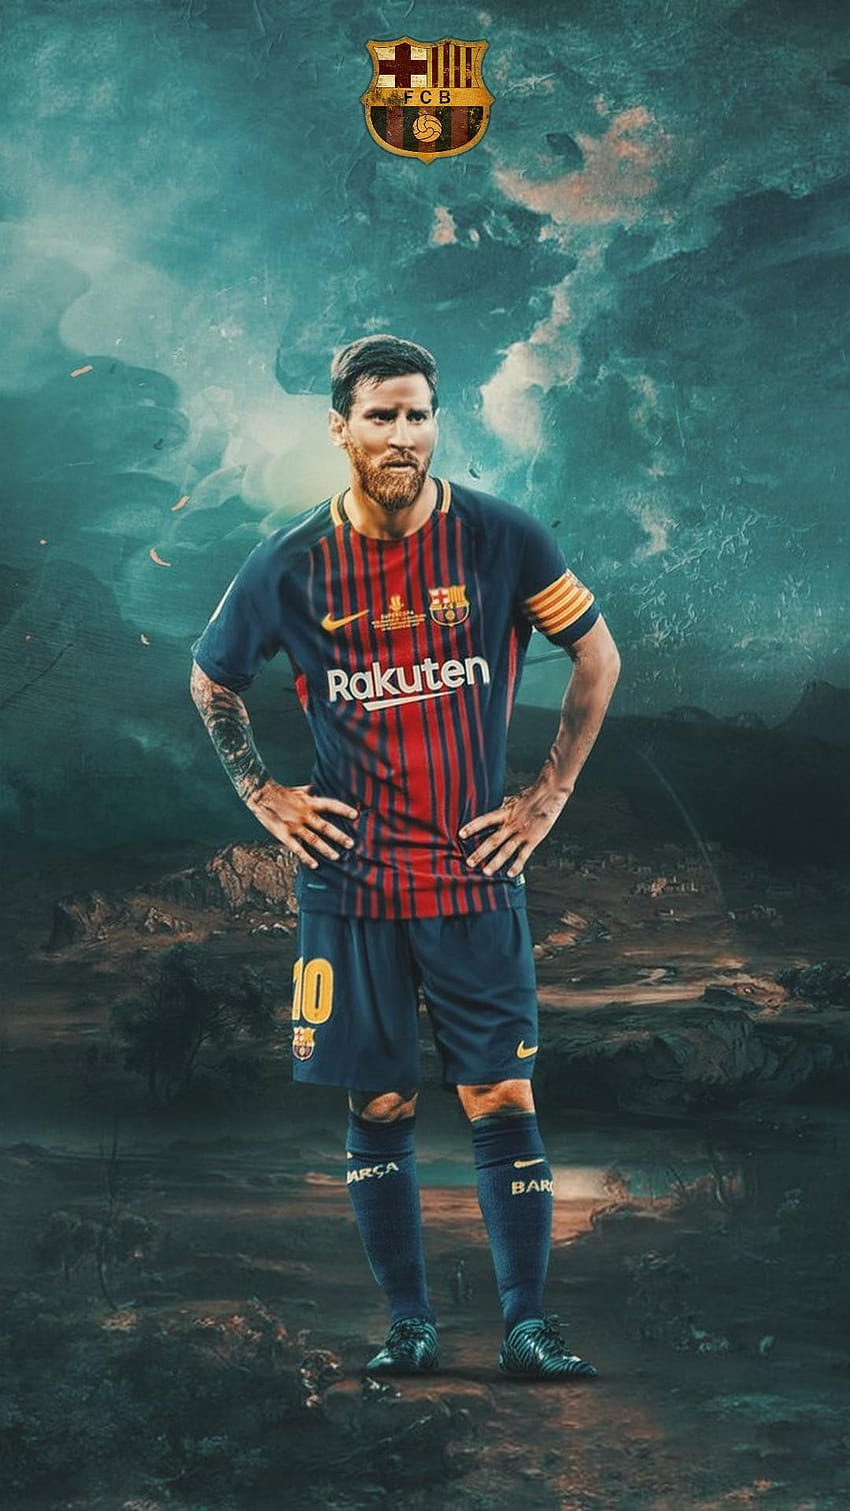 Nếu bạn là Fan hâm mộ của Barcelona và Lionel Messi, bạn nên xem những hình nền HD cho iPhone được lấy cảm hứng từ sự nghiệp thành công của siêu sao này. Những hình nền đậm chất Barcelona sẽ đưa bạn đến gần hơn với thế giới của Messi.